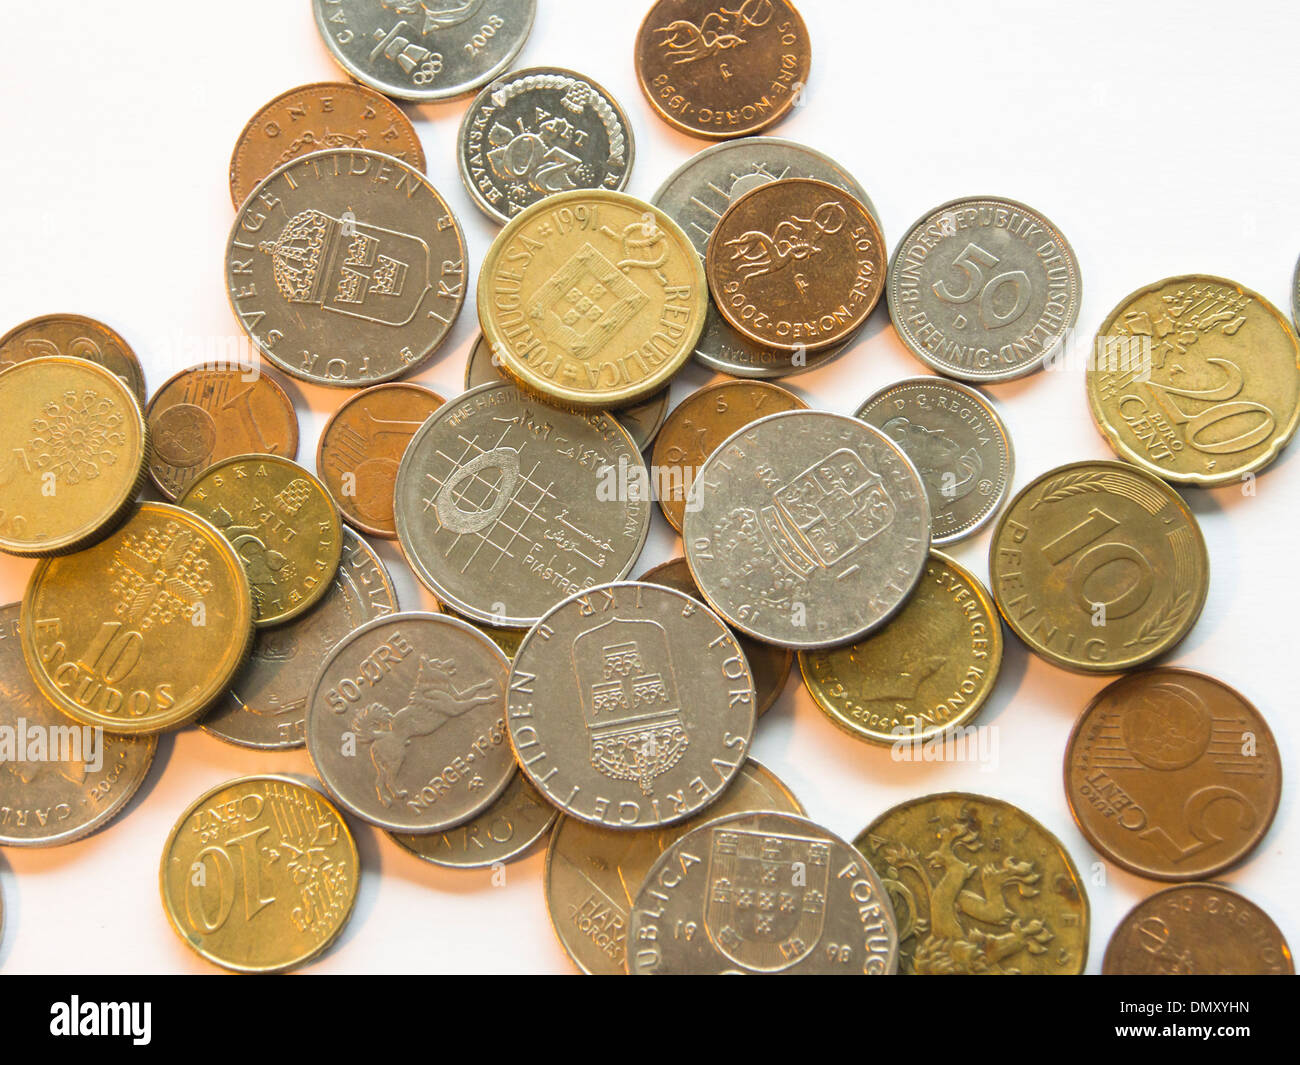 Münzen auf weißem Hintergrund verschiedener Länder Währung, norwegische  Krone portugiesische Escudos Øre, UK, alte, schwedische Kronen, Euro  Stockfotografie - Alamy